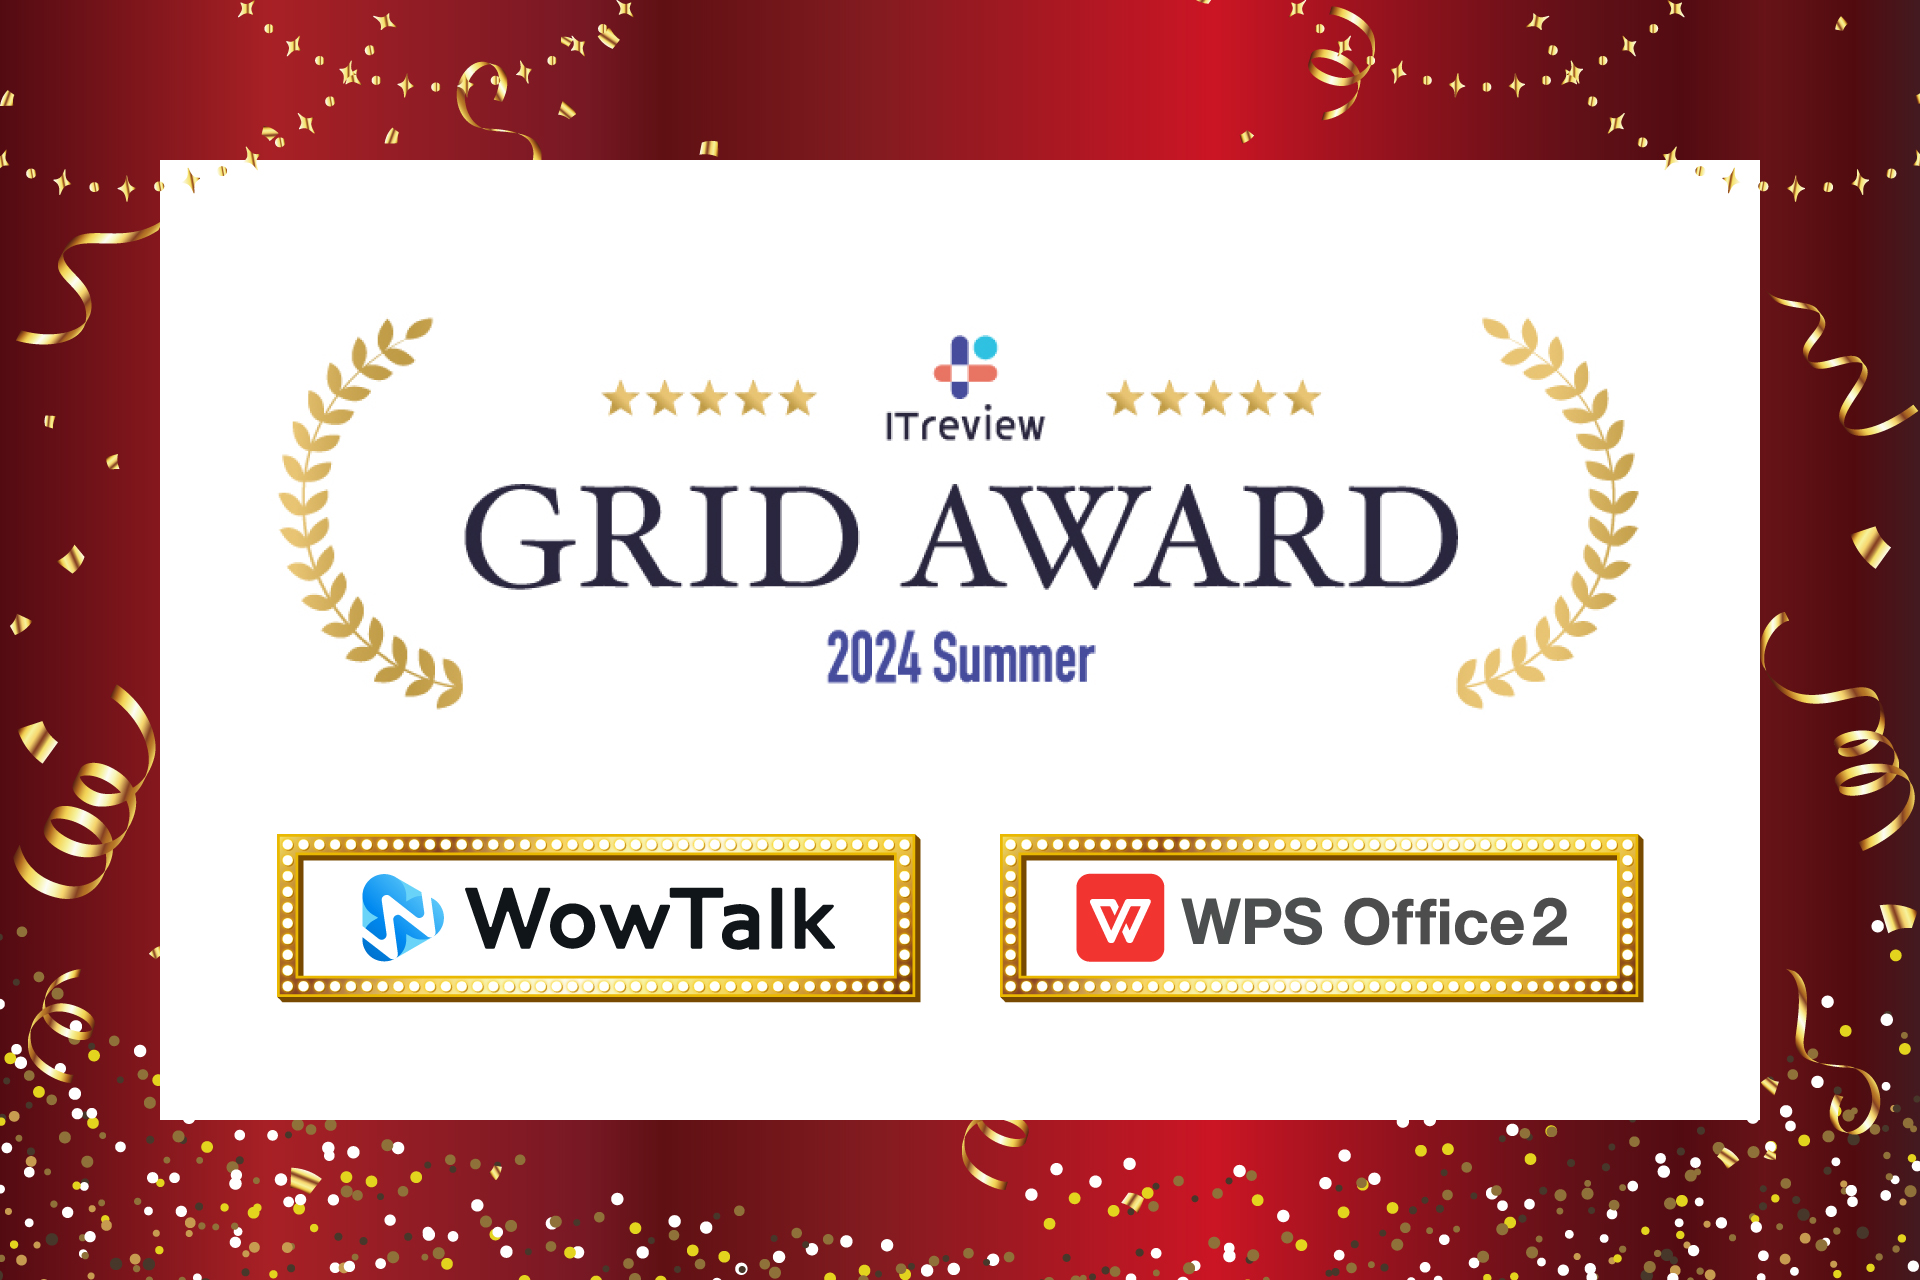 ビジネスチャット・社内SNS「WowTalk」とオフィスソフト「WPS Office」、ITreview Grid Aw